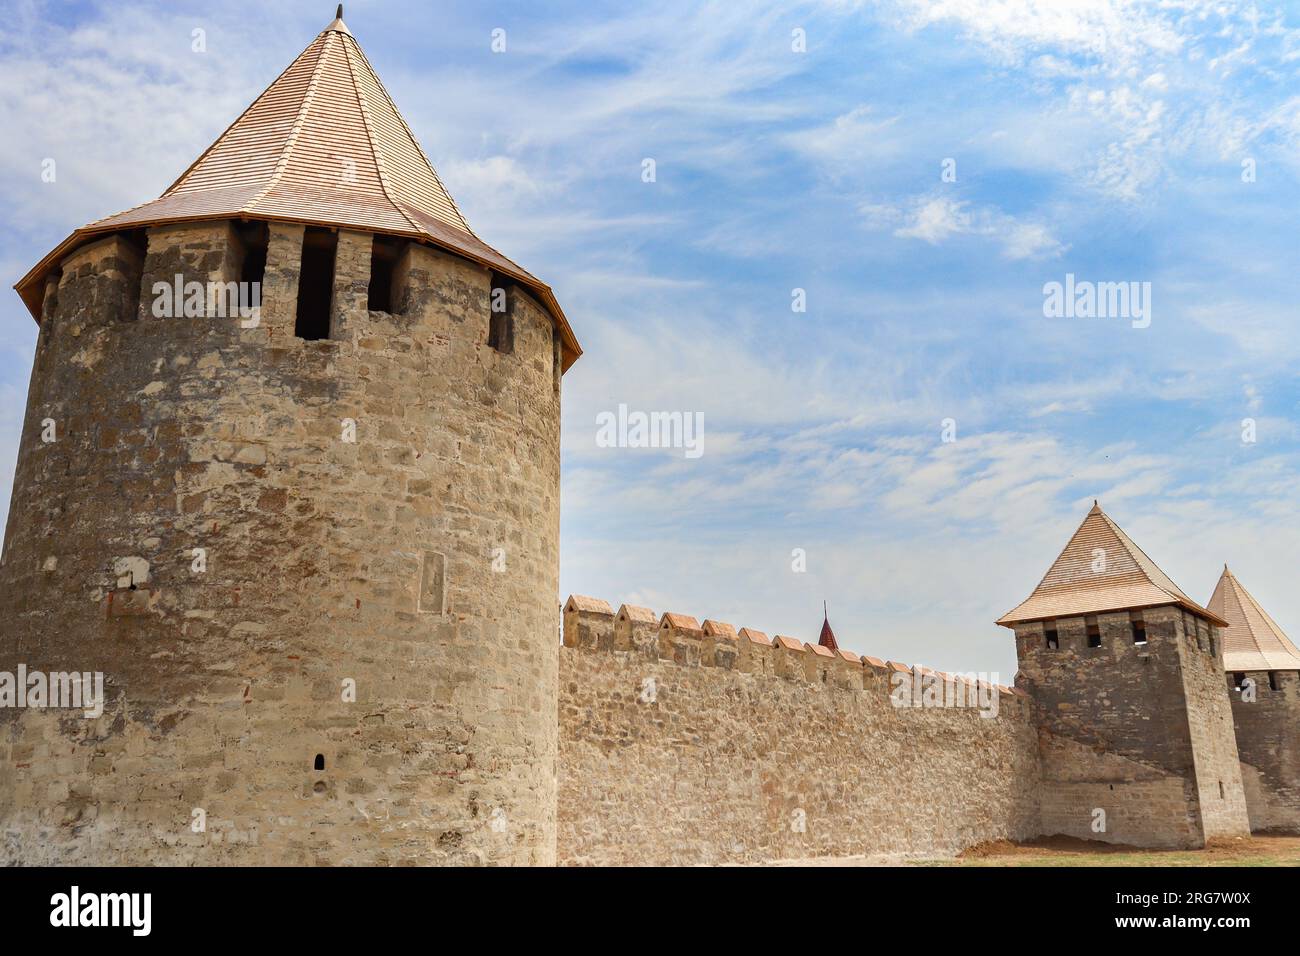 Extérieur d'une forteresse médiévale historique avec tours et mur de pierre Banque D'Images